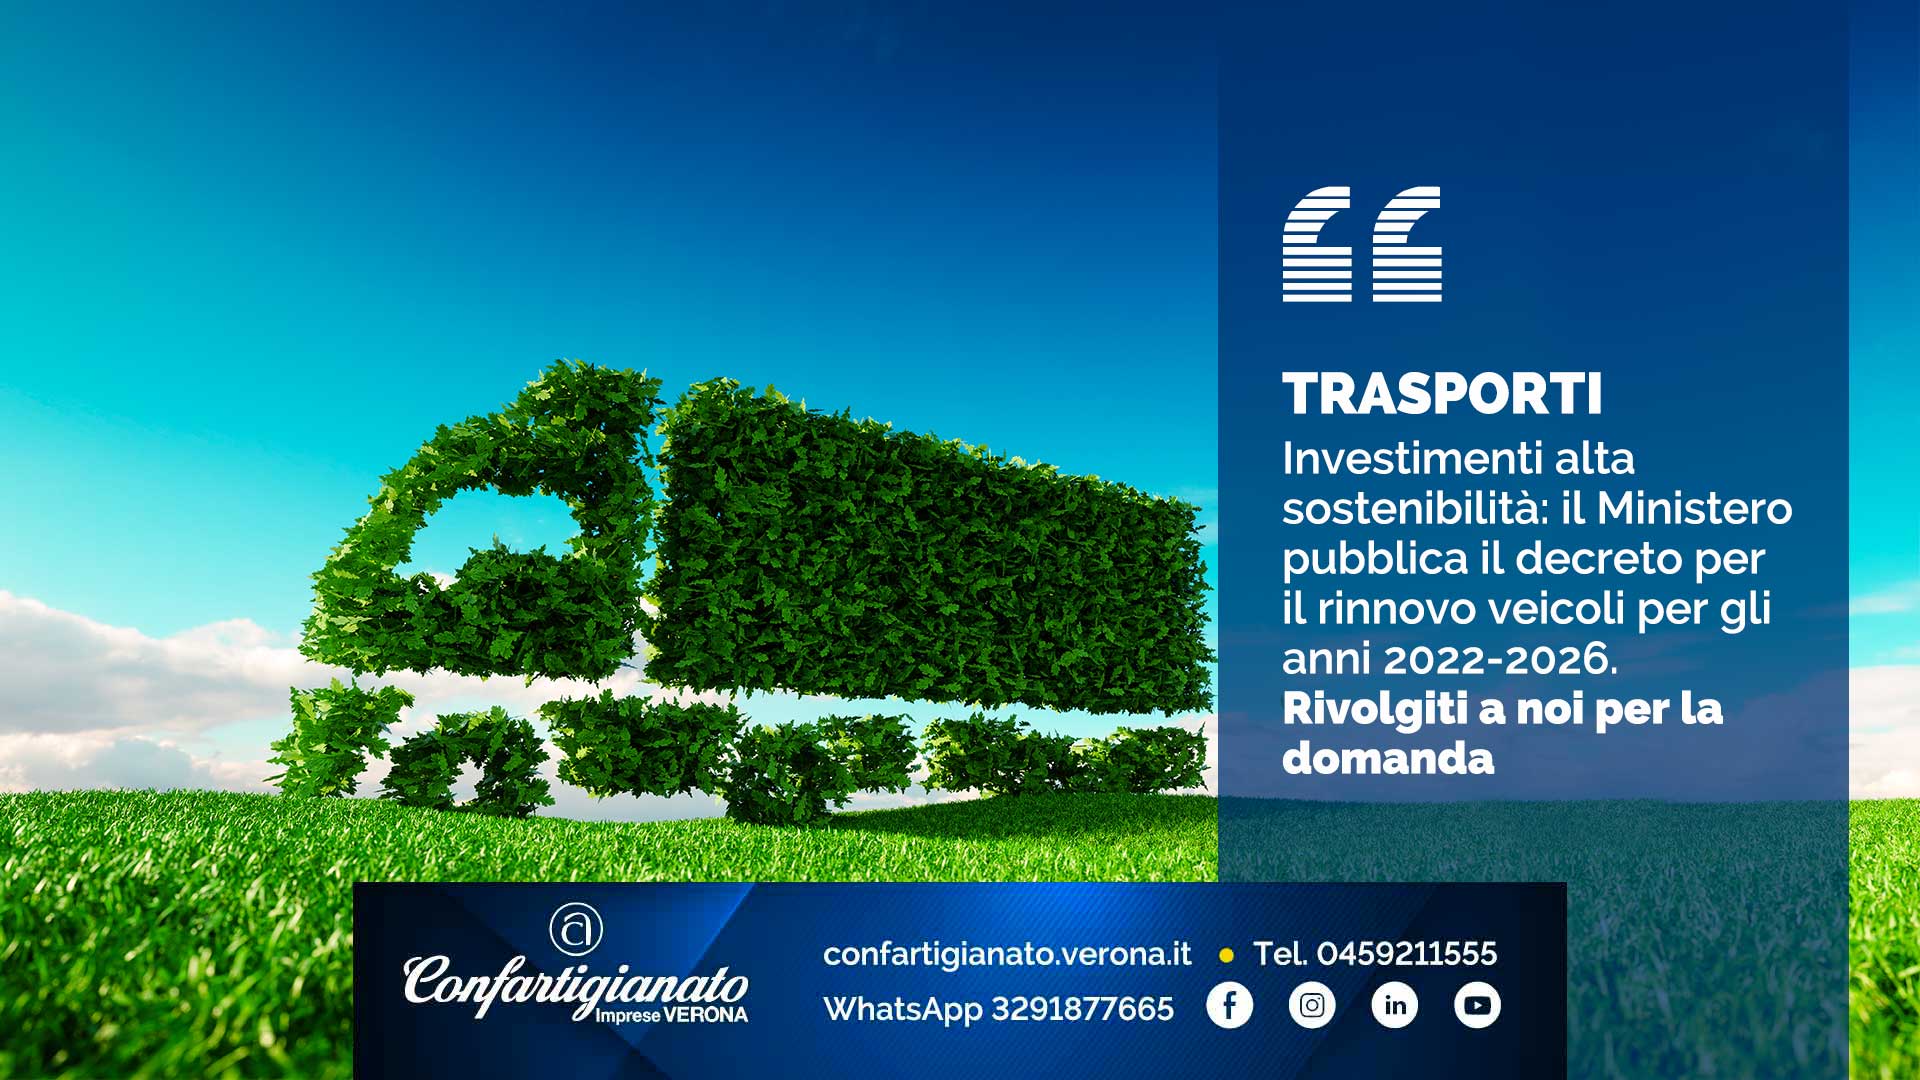 TRASPORTI – Investimenti alta sostenibilità: il Ministero pubblica il decreto per il rinnovo veicoli per gli anni 2022-2026. Rivolgiti a noi per la domanda